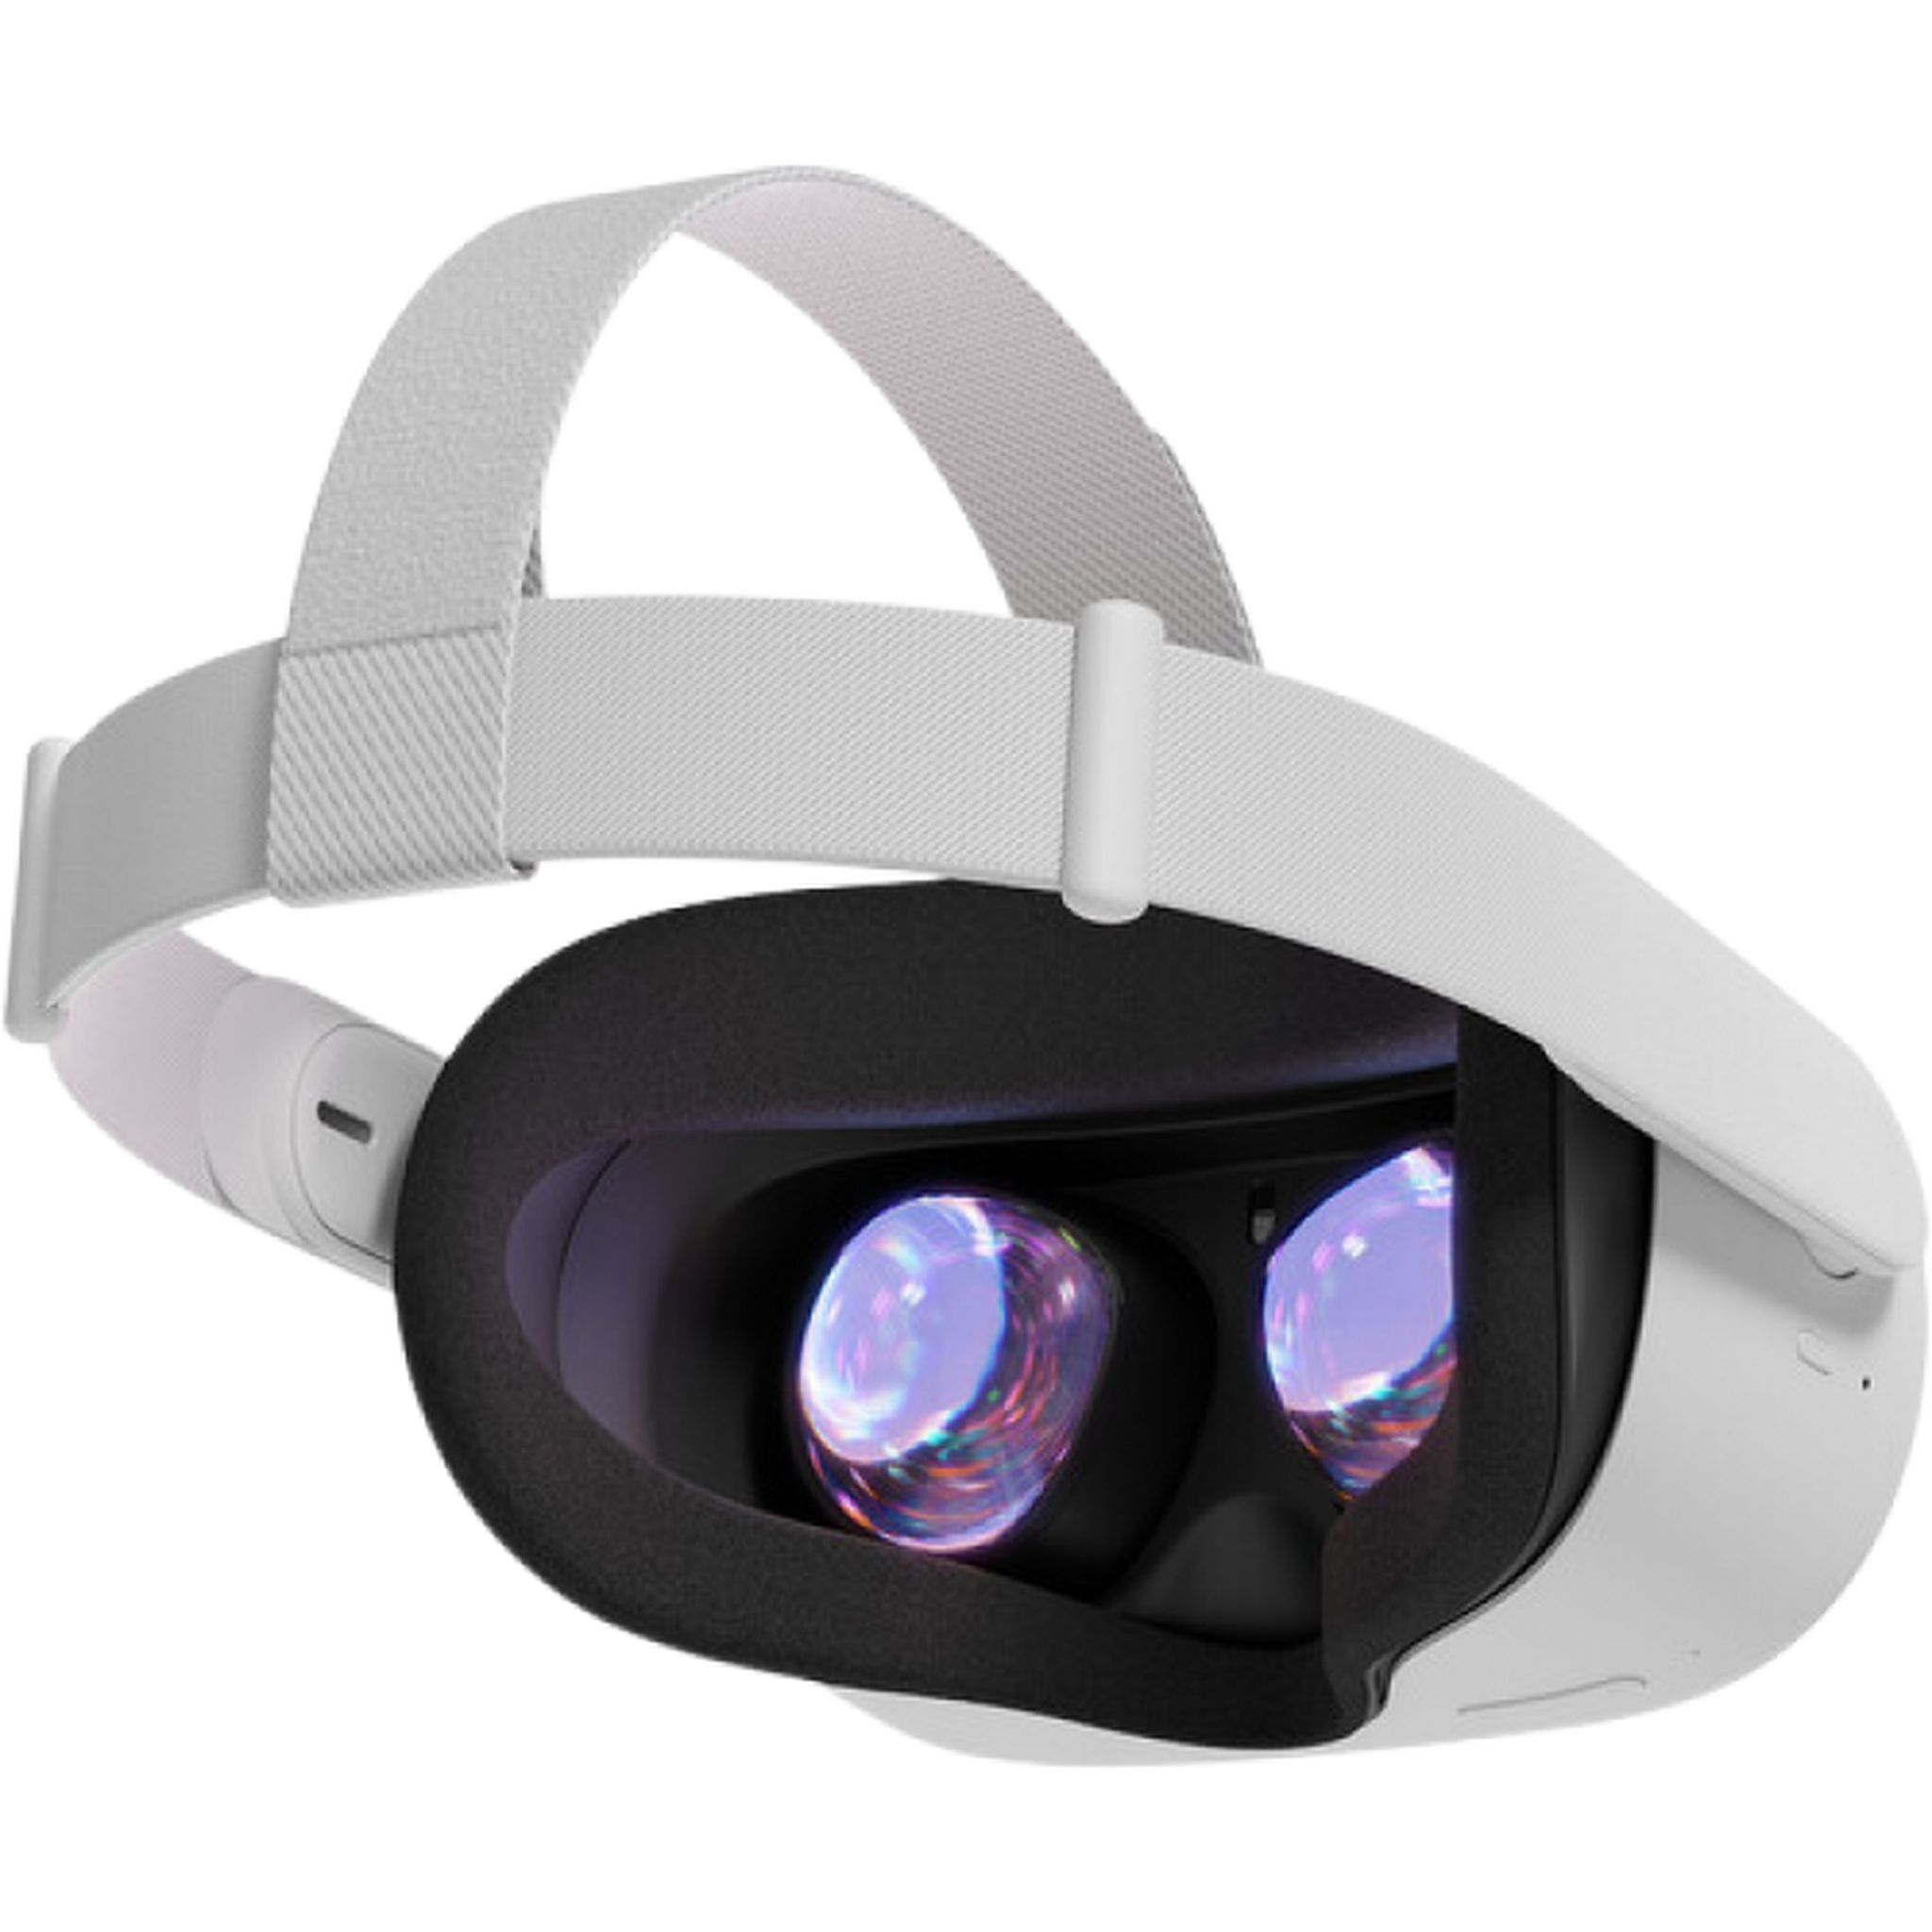 نظارة الواقع الإفتراضي أوكيولس كويست 2 أدفانسد الكل في واحد (128جيجابايت)